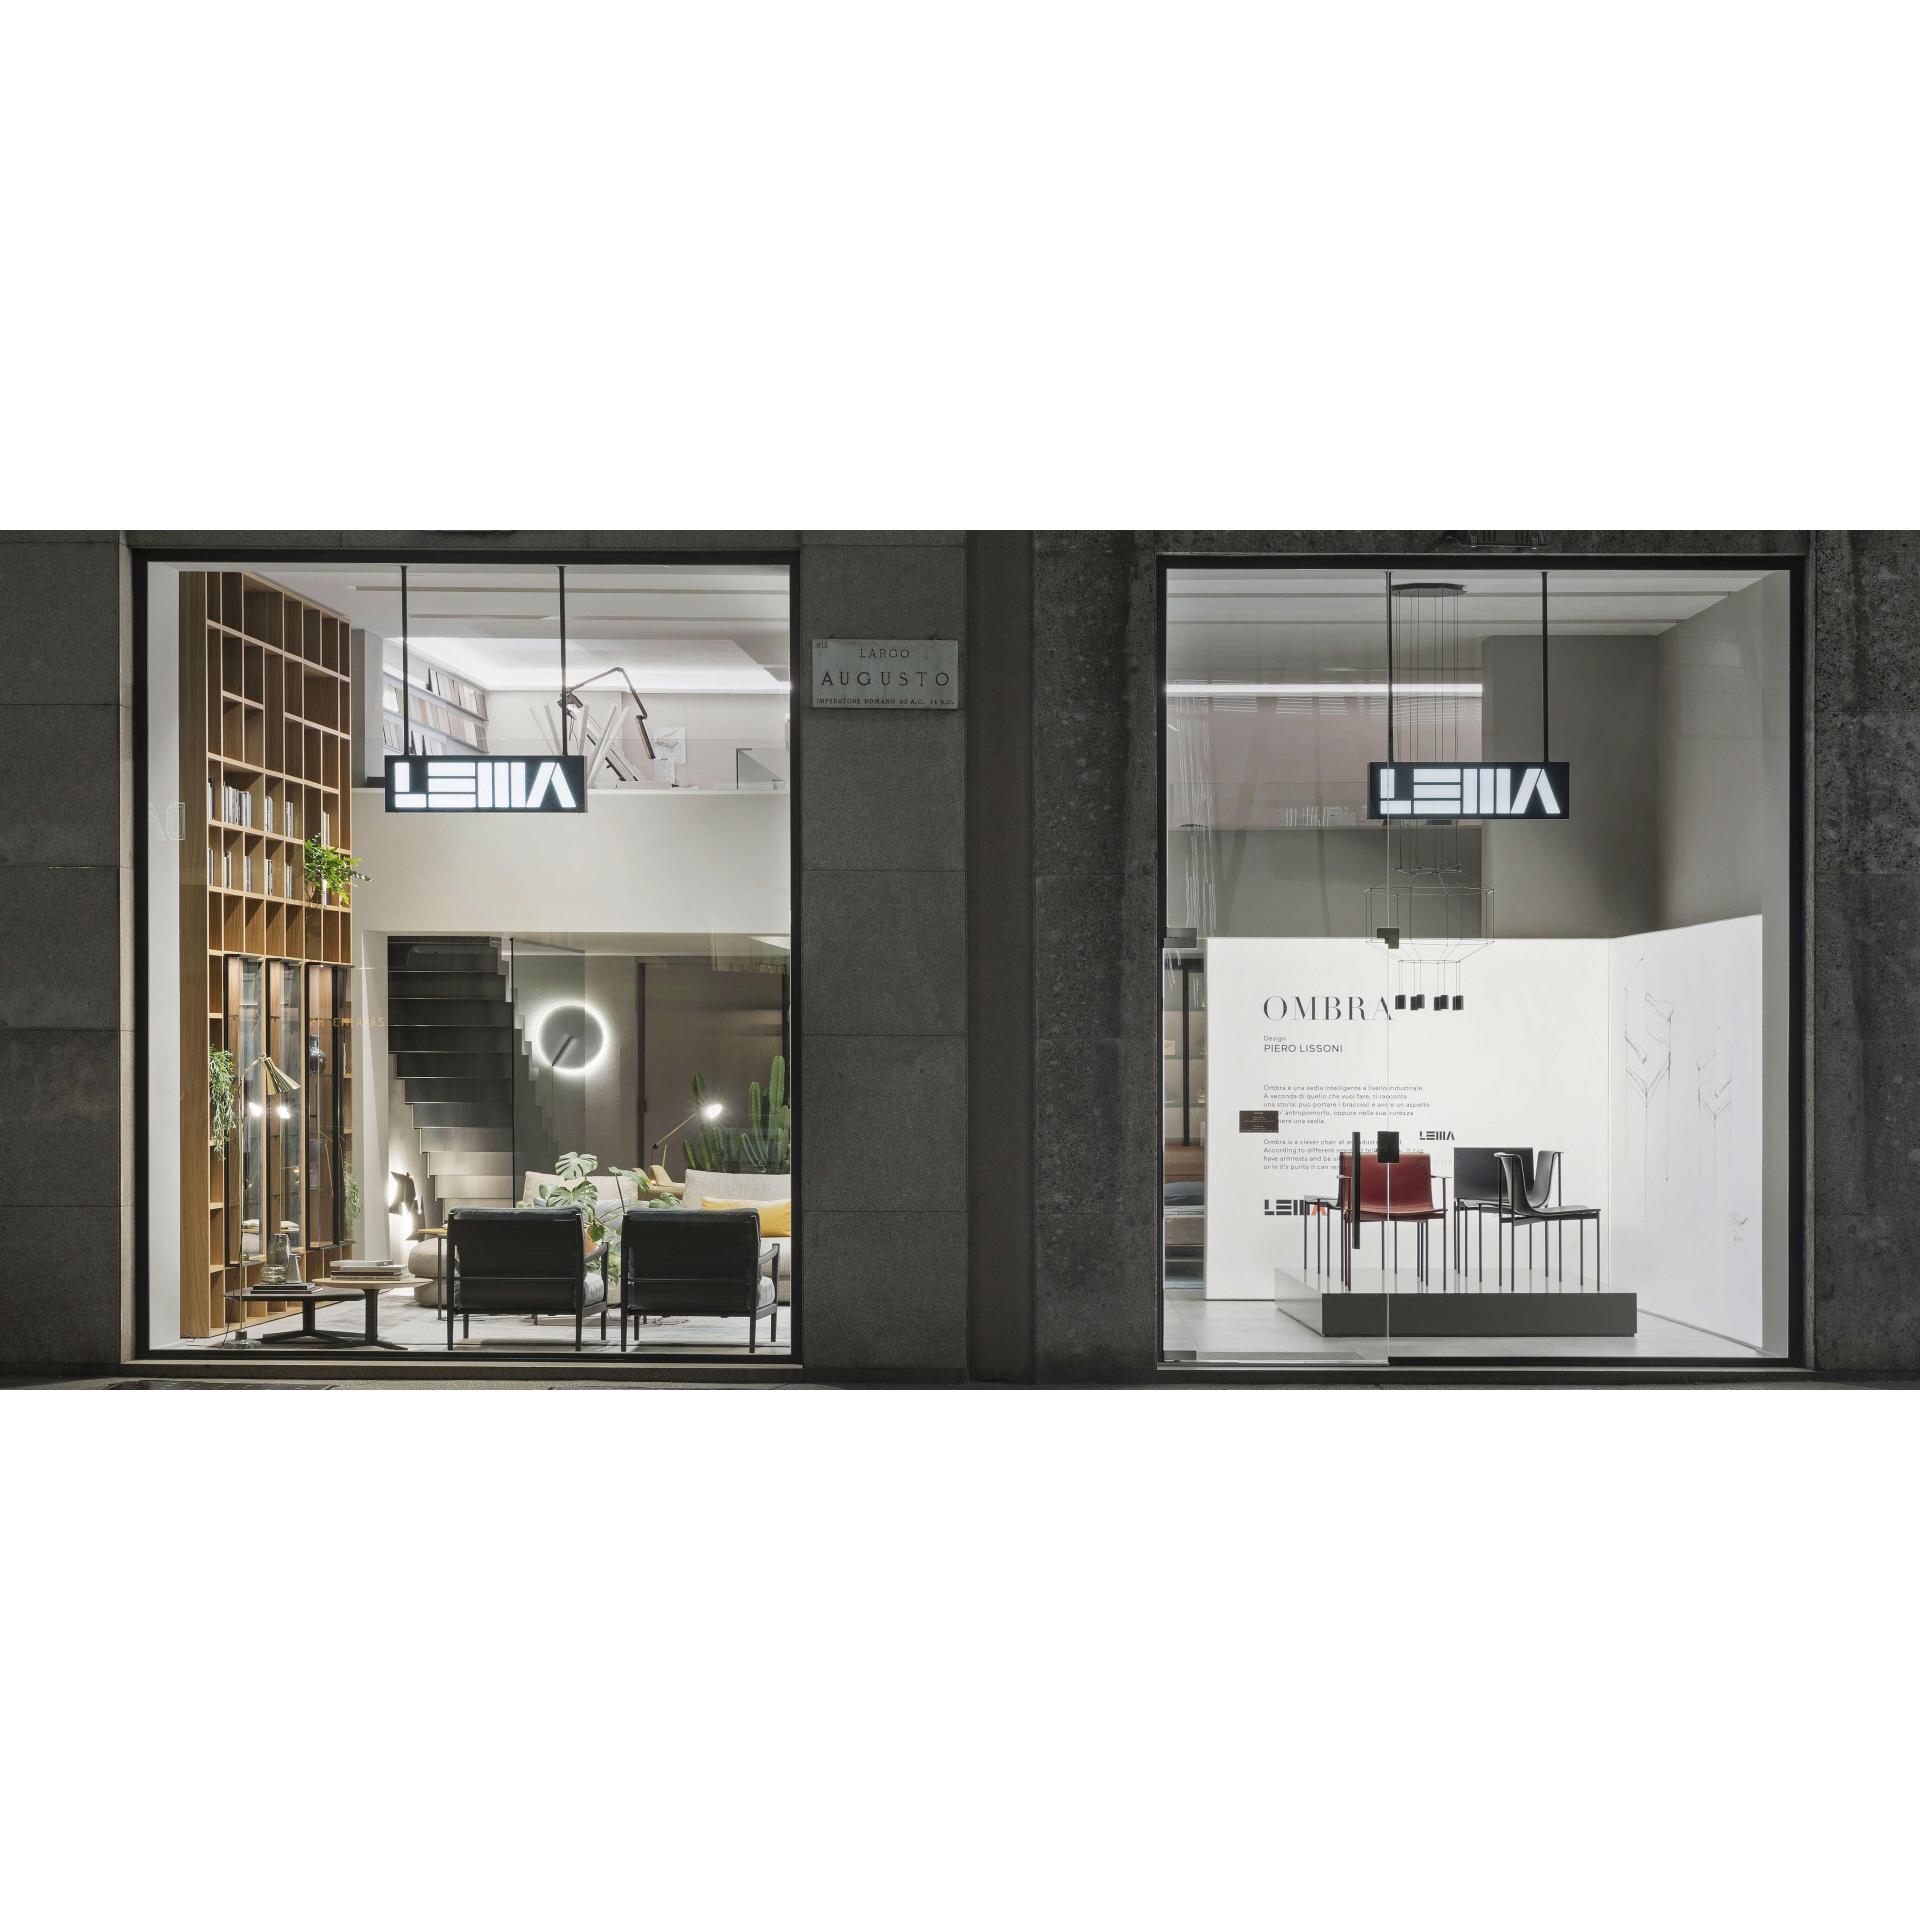 Lema s'apprête à inaugurer son magasin entièrement rénové à Milan